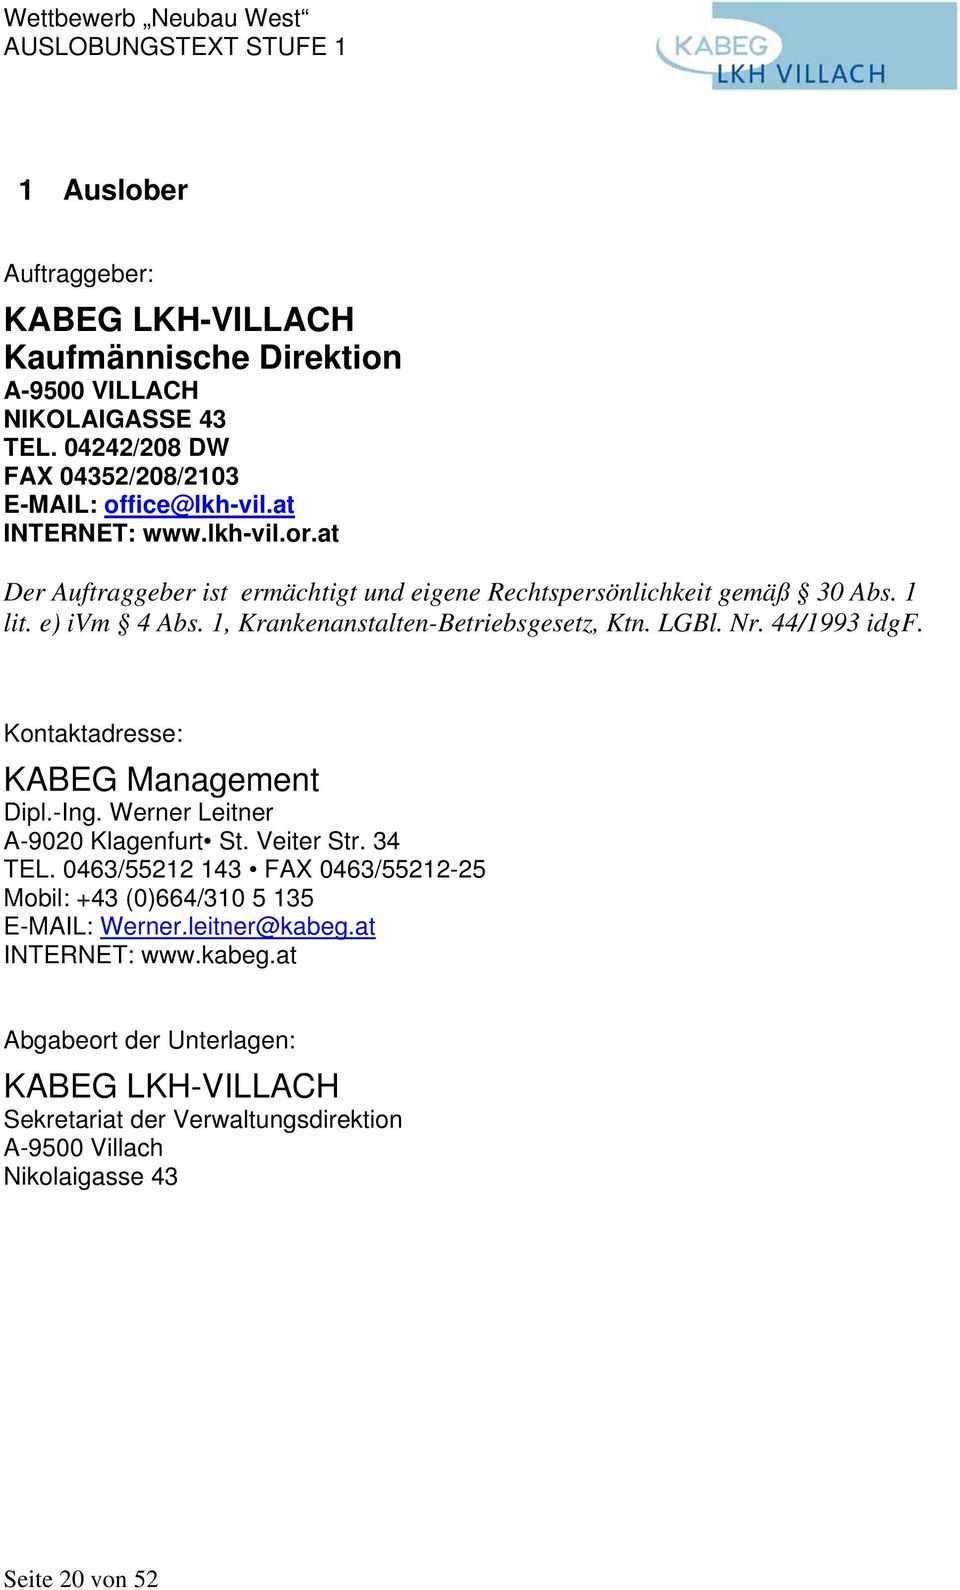 44/1993 idgf. Kontaktadresse: KABEG Management Dipl.-Ing. Werner Leitner A-9020 Klagenfurt St. Veiter Str. 34 TEL.